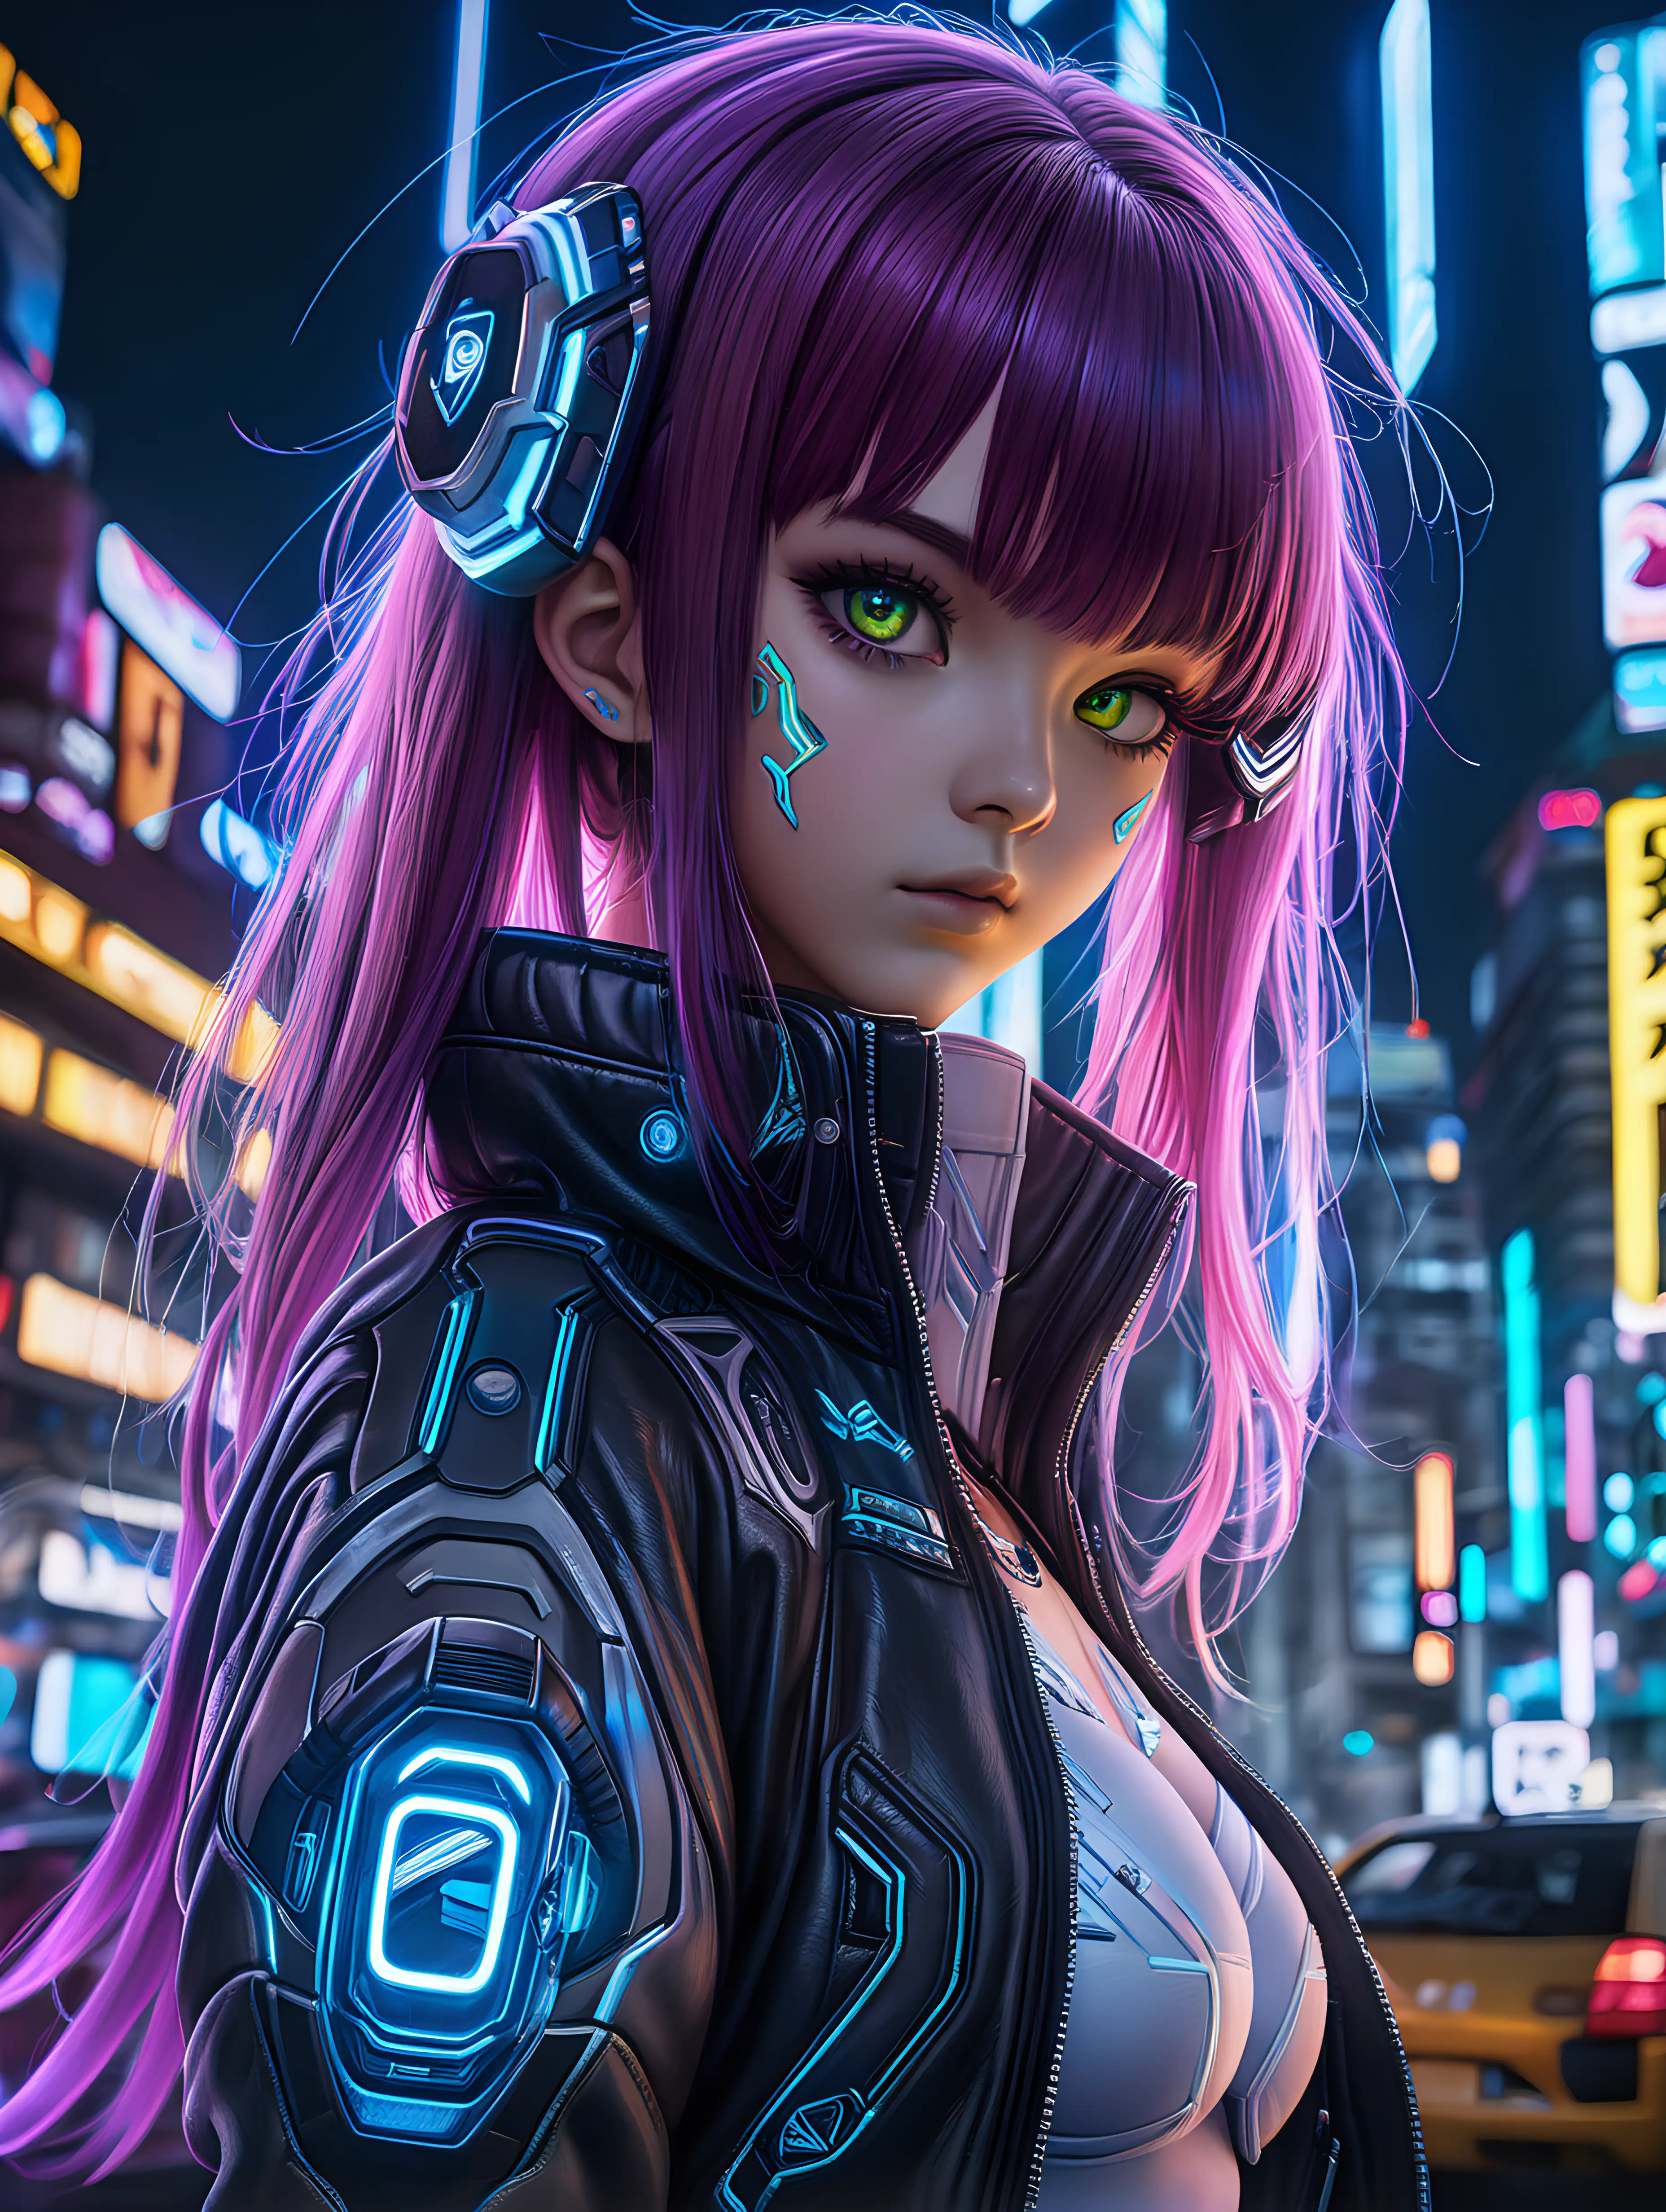 Futuristic Anime Girl in Cyberpunk Metropolis